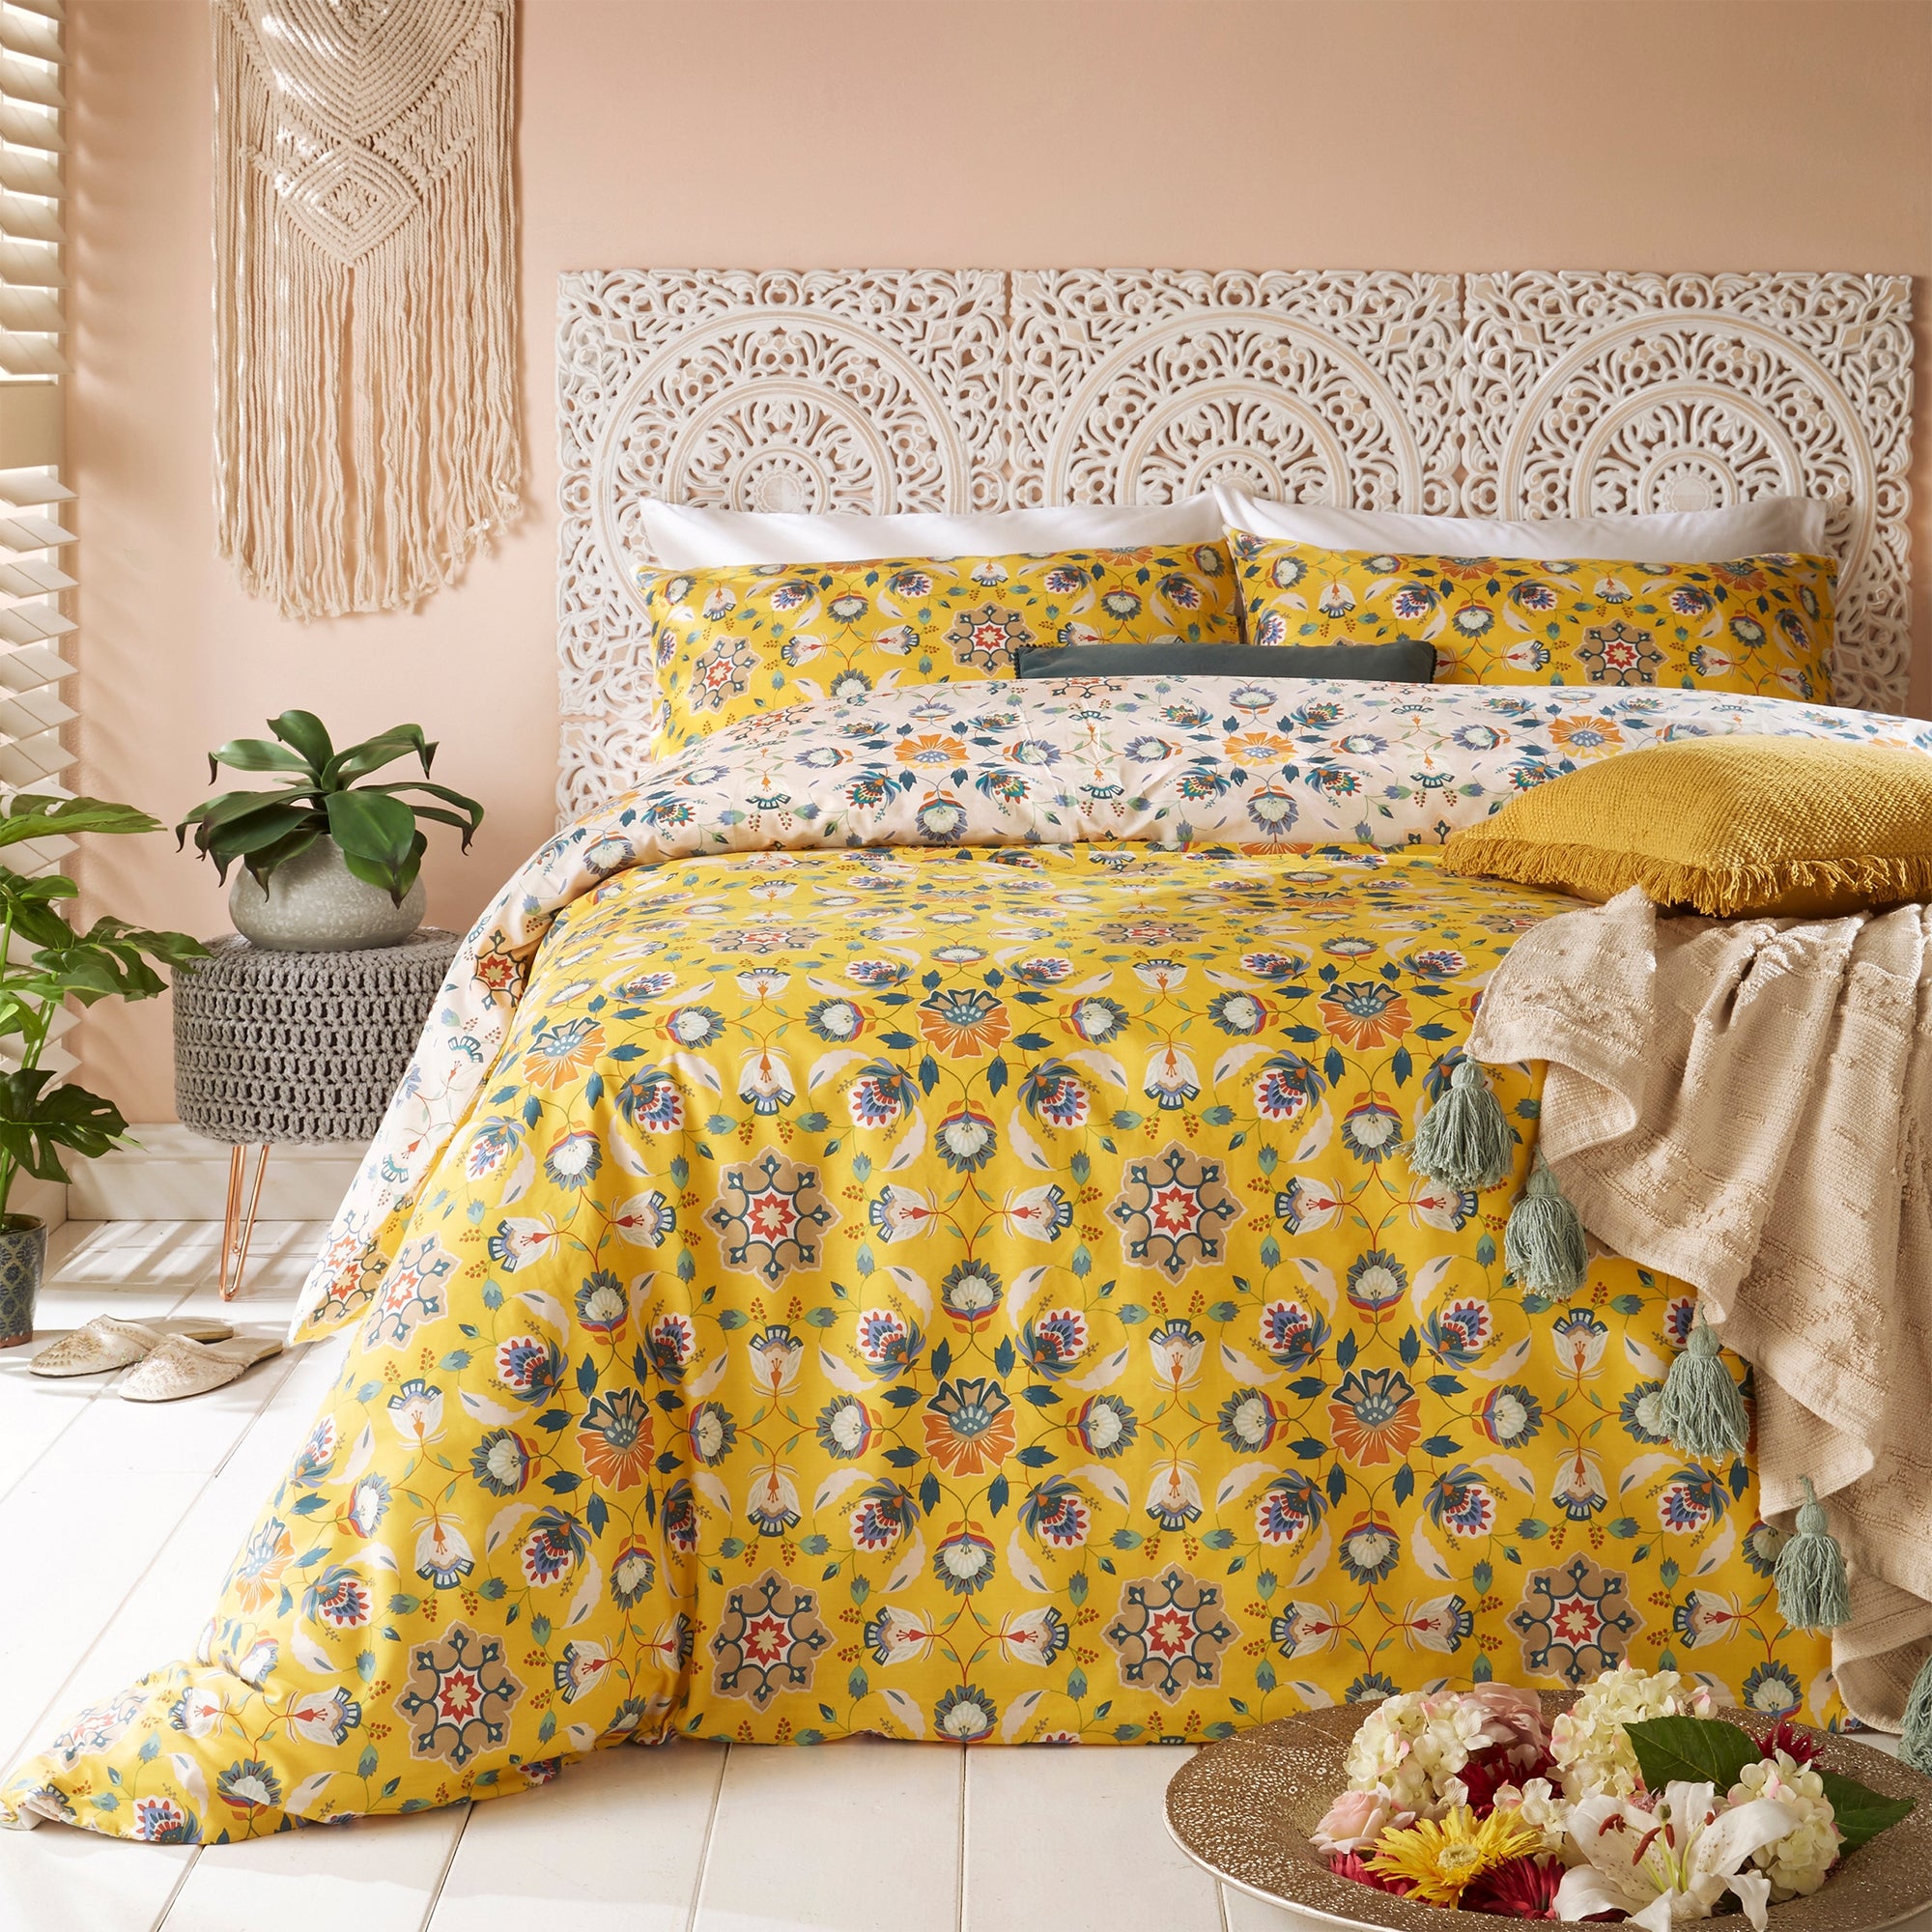 Furn Folk Flora Ochre Reversible Duvet Cover And Pillowcase Set Yellowbluewhite